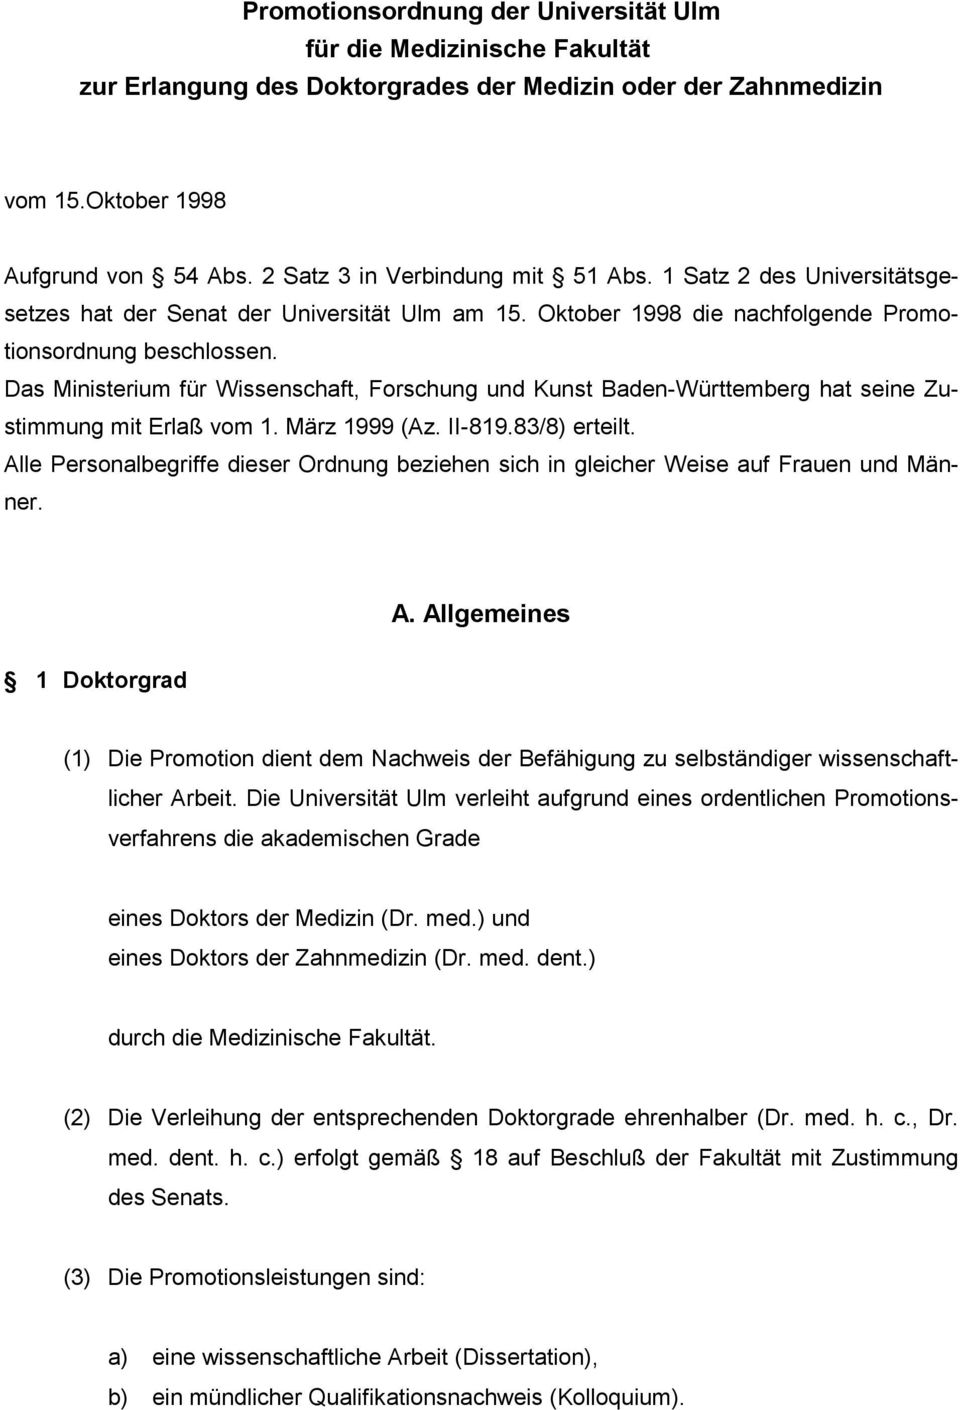 Das Ministerium für Wissenschaft, Forschung und Kunst Baden-Württemberg hat seine Zustimmung mit Erlaß vom 1. März 1999 (Az. II-819.83/8) erteilt.